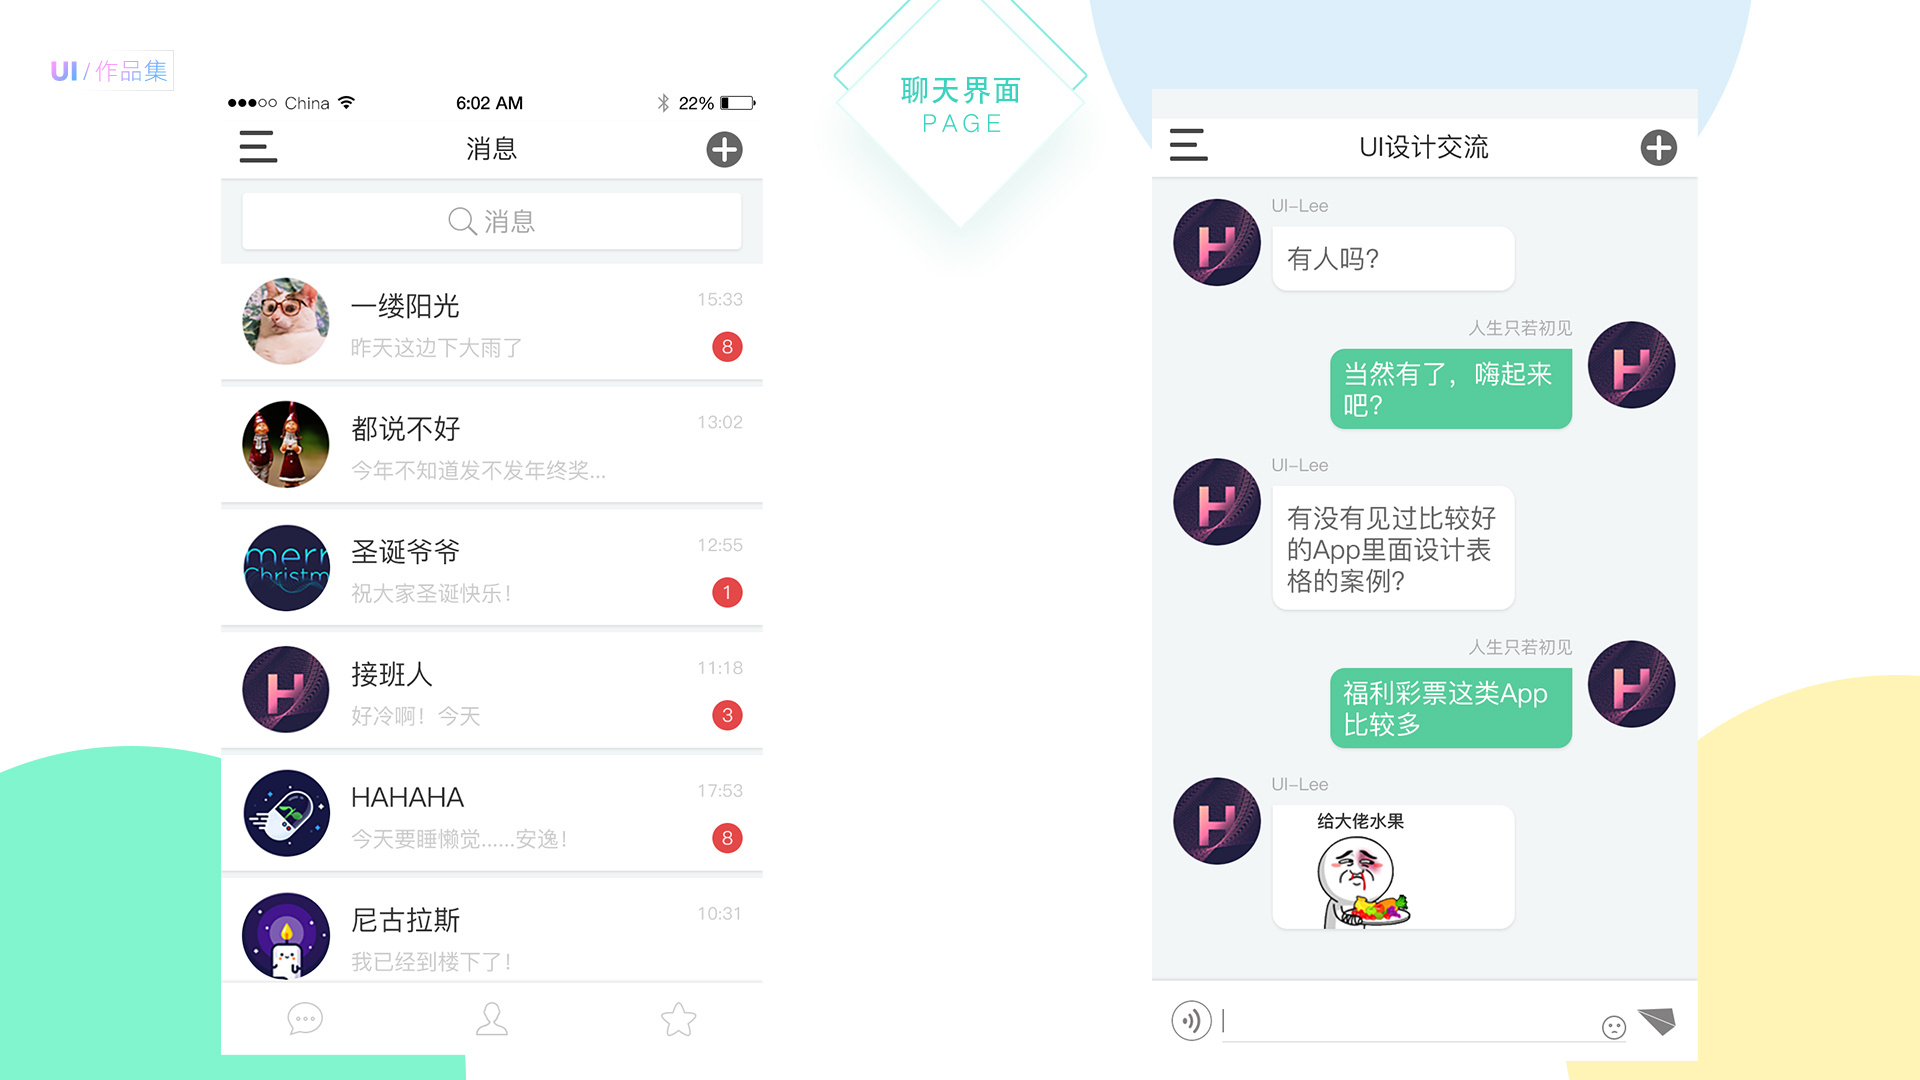 whatsapp中文最新版：界面简约大方，功能强大实用，使用体验超乎想象